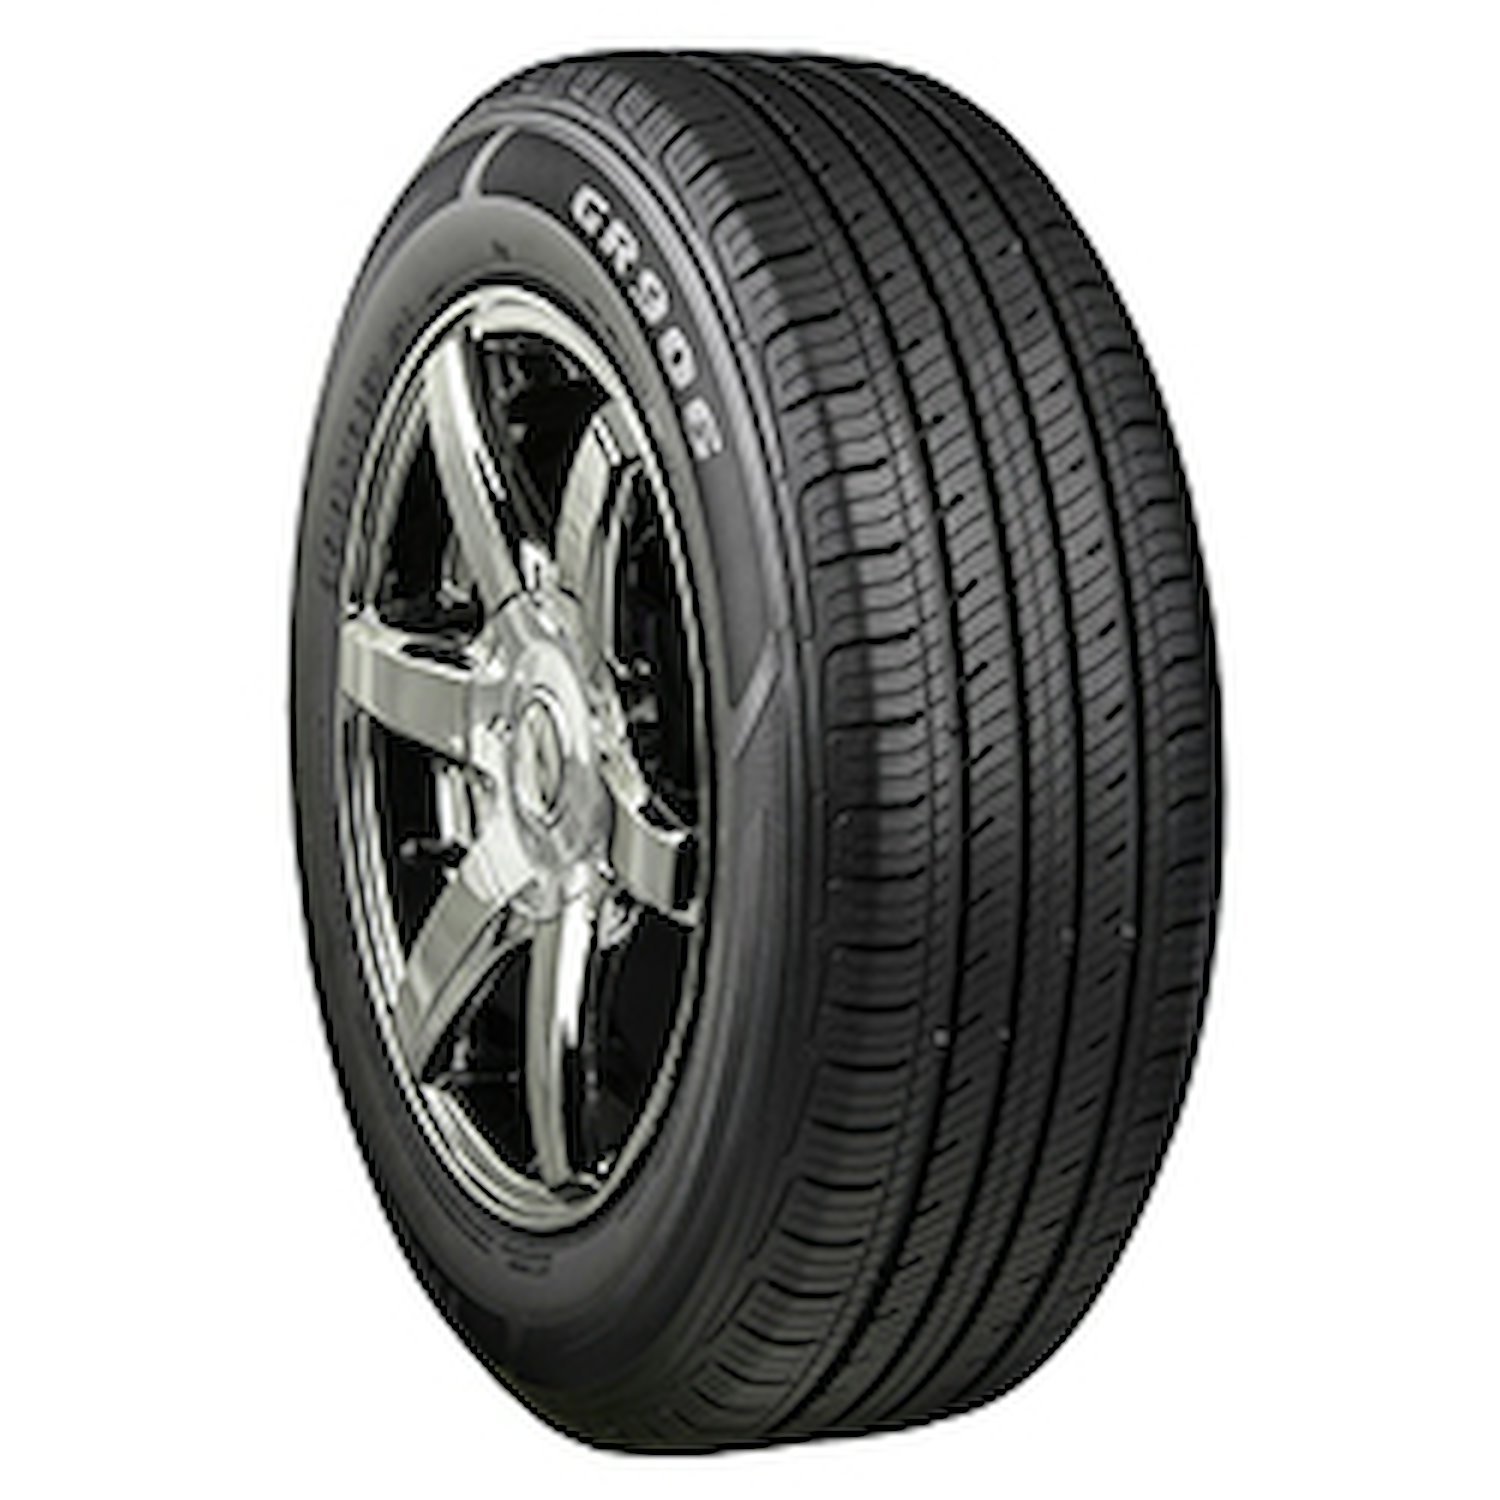 GR906 Tire, 205/65R16 95H